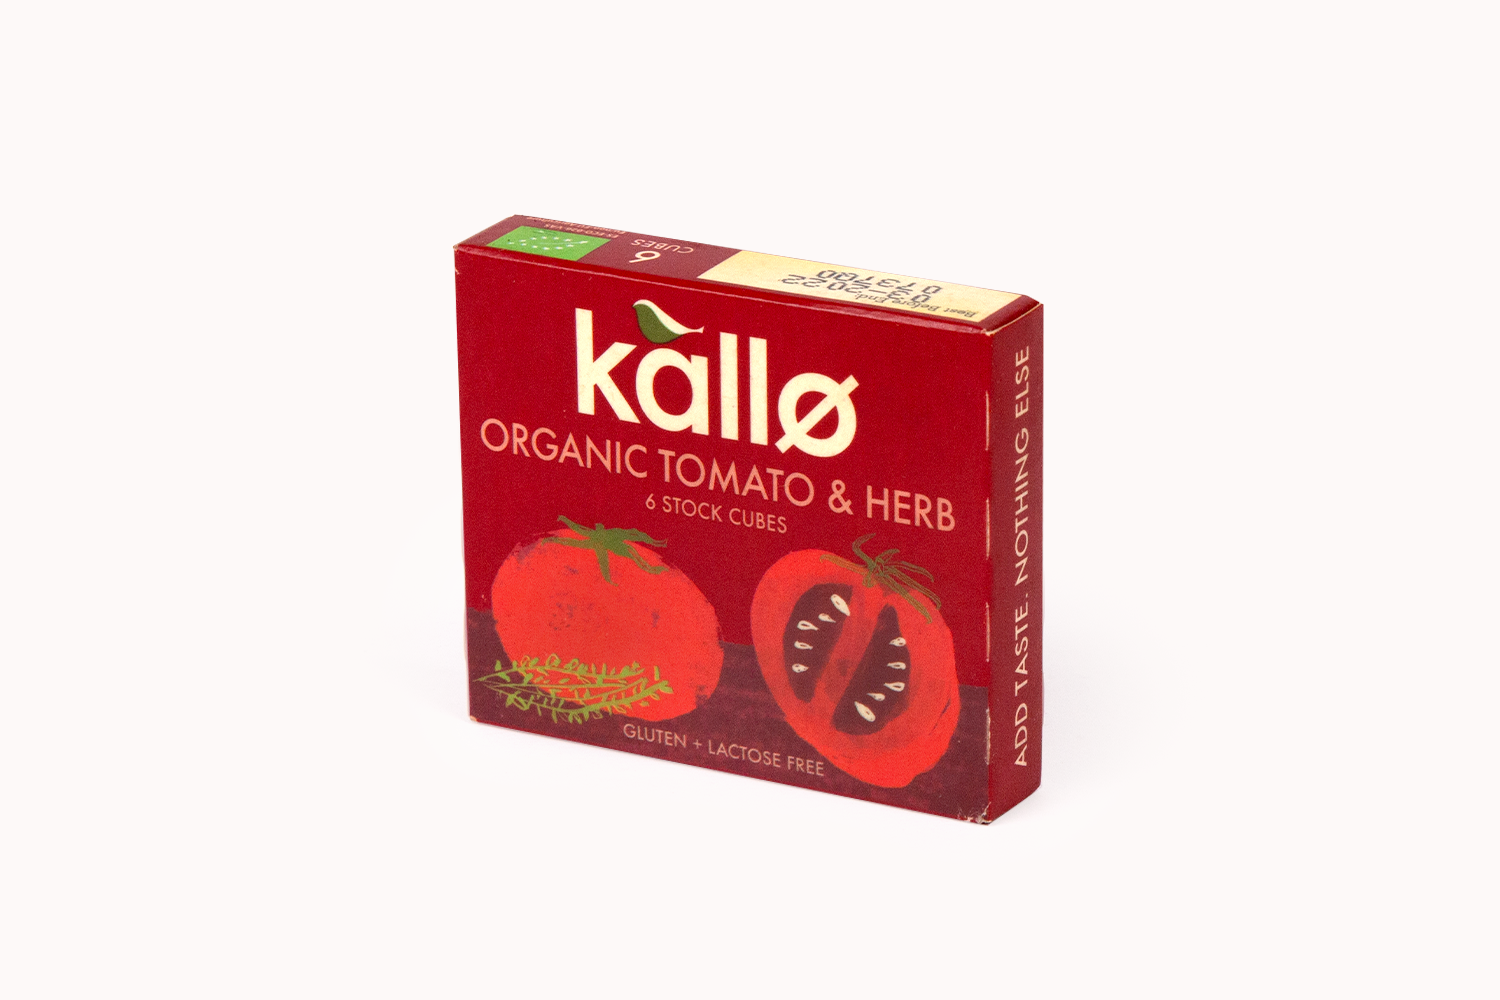 Kallo Organic Tomato & Herb Stock Cubes